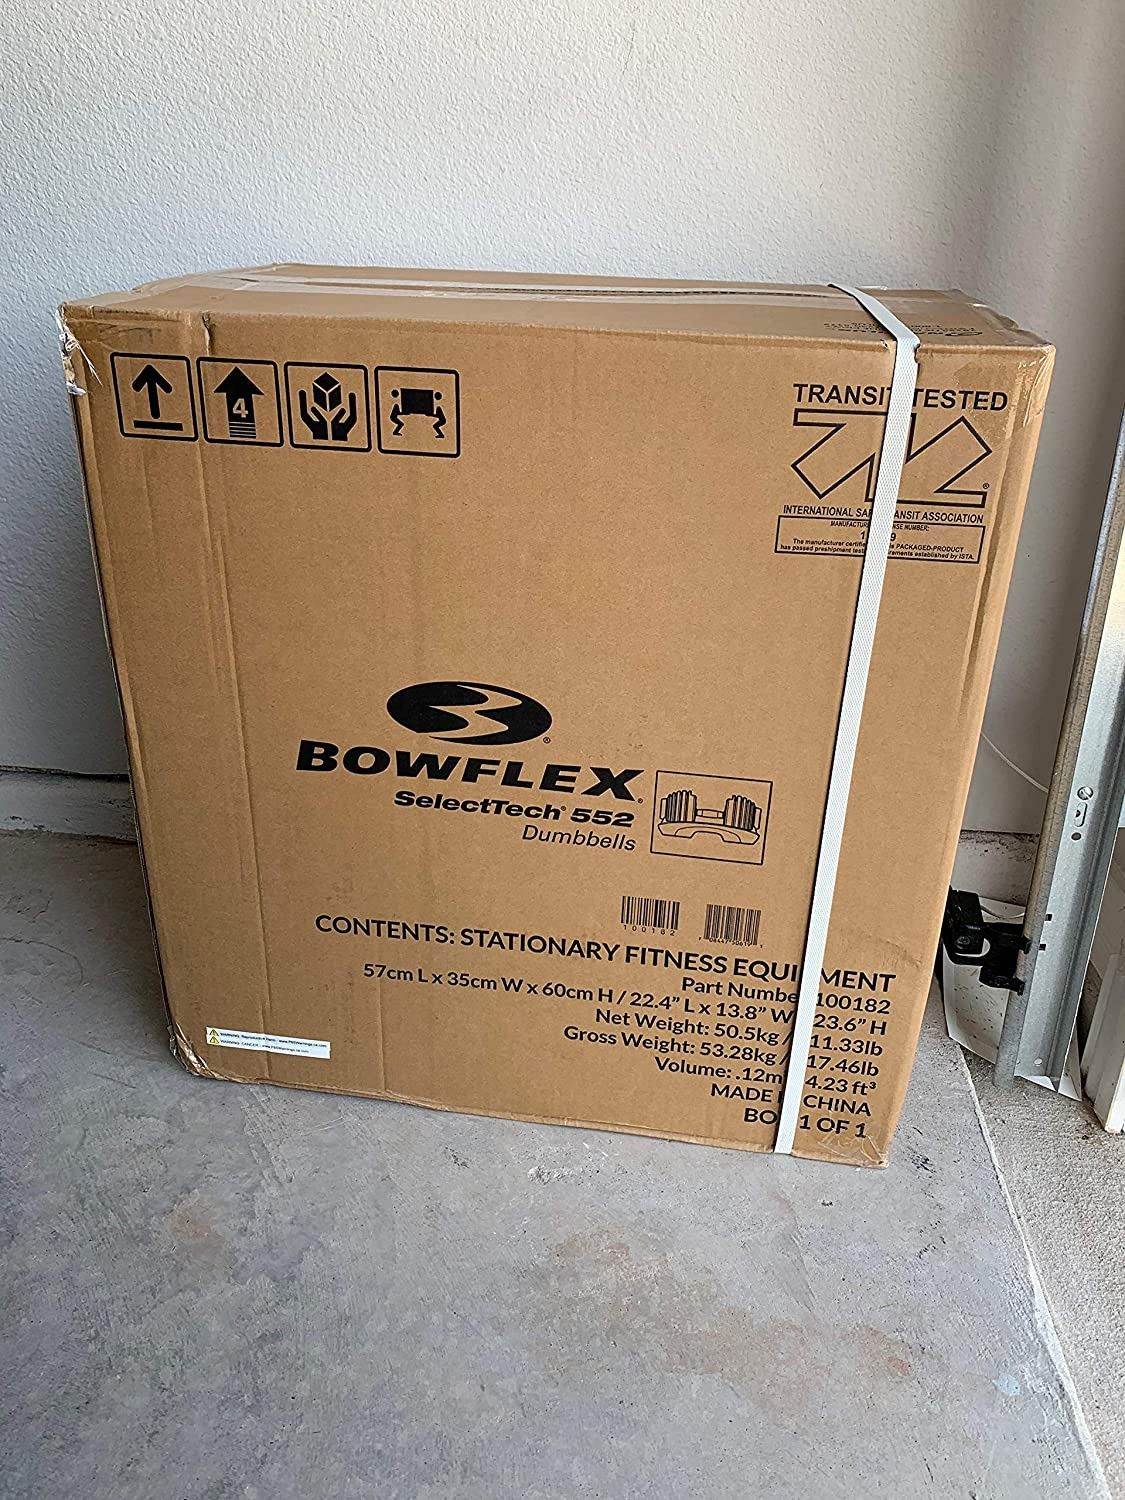 New Bowflex SelectTech 552 Adjustable Dumbbells